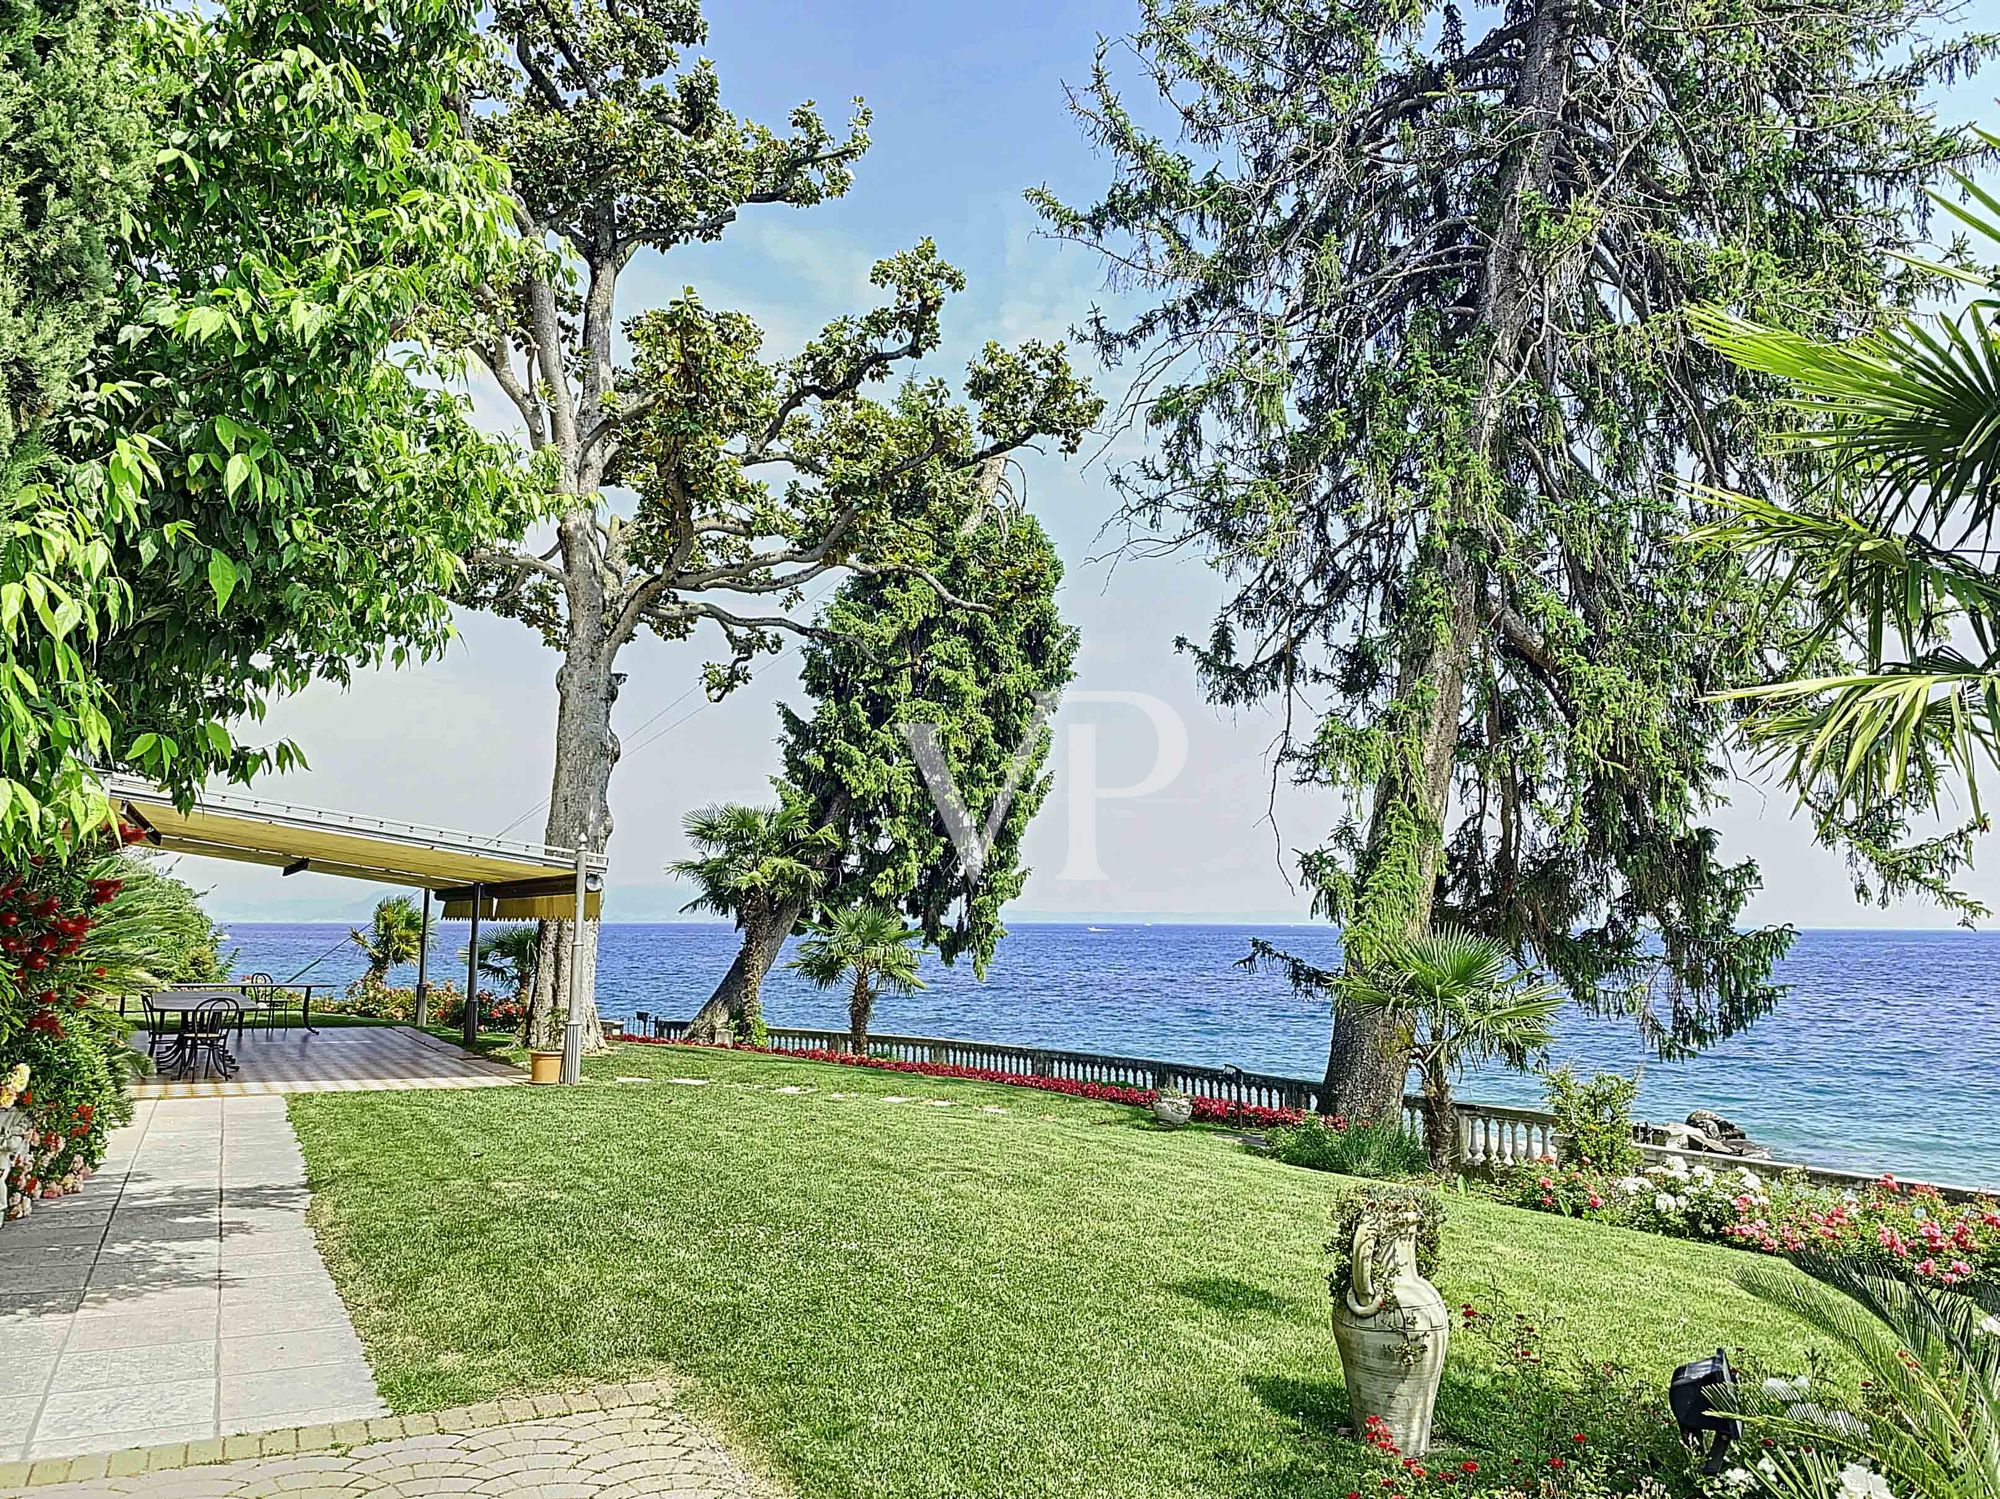 Impresionante villa en línea directa con el lago